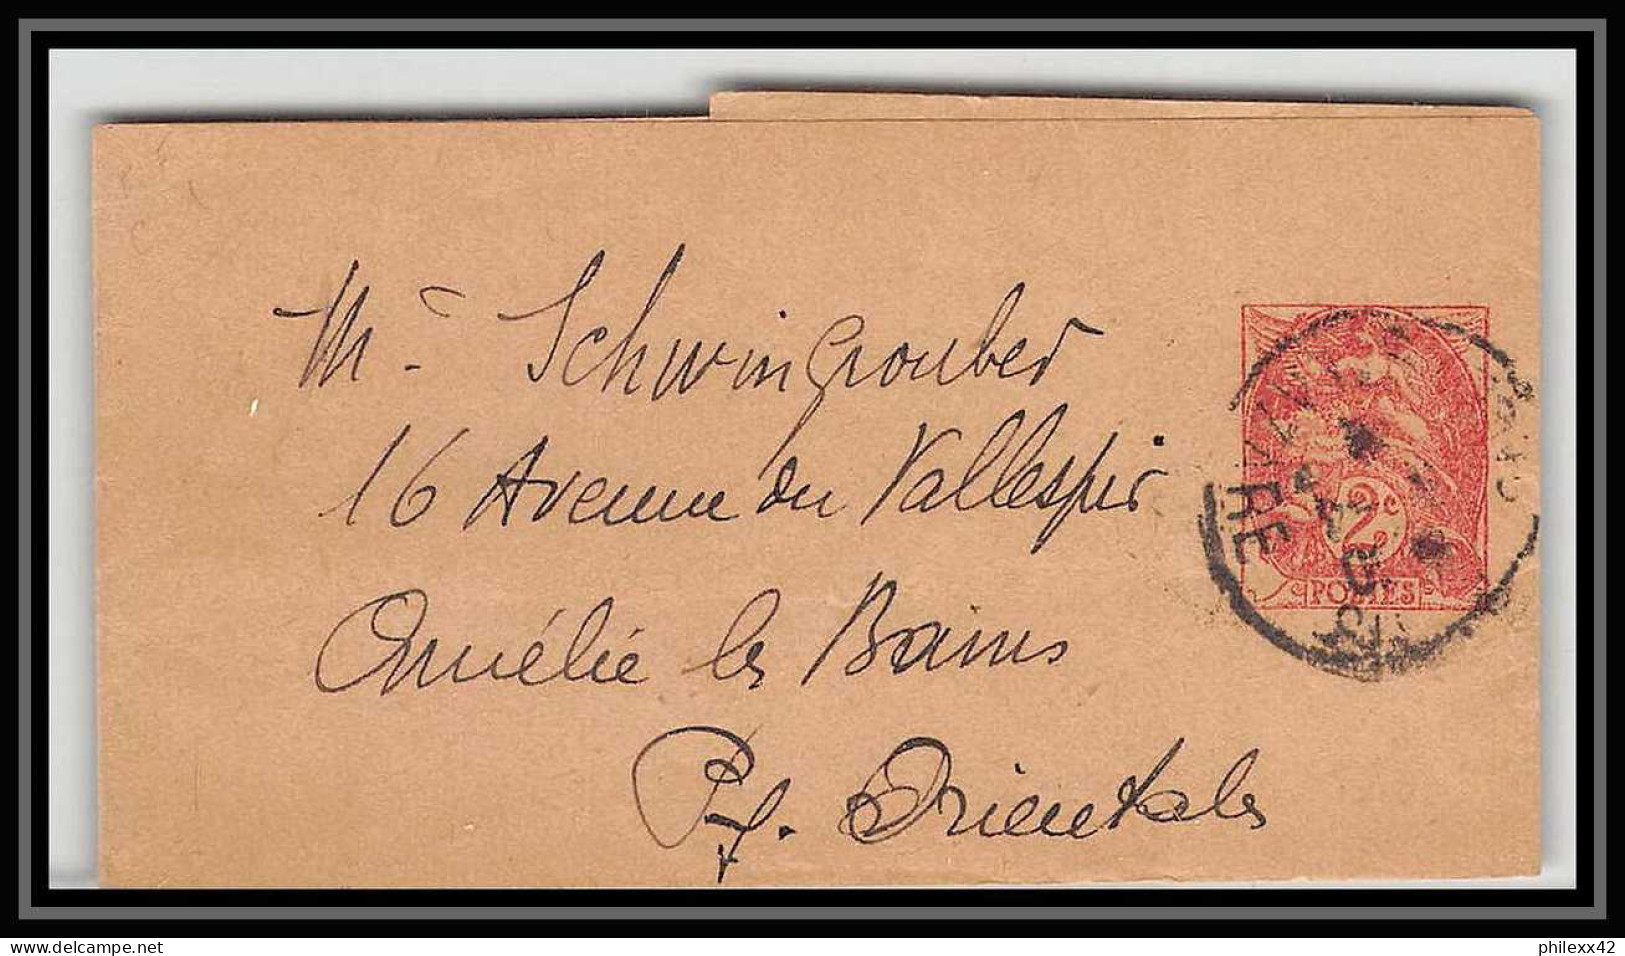 4618/ France Bande Journal Entier Postal Stationery 2c Blanc Couleur Orange Pour Amélie-les-Bains 1917 - Bandas Para Periodicos